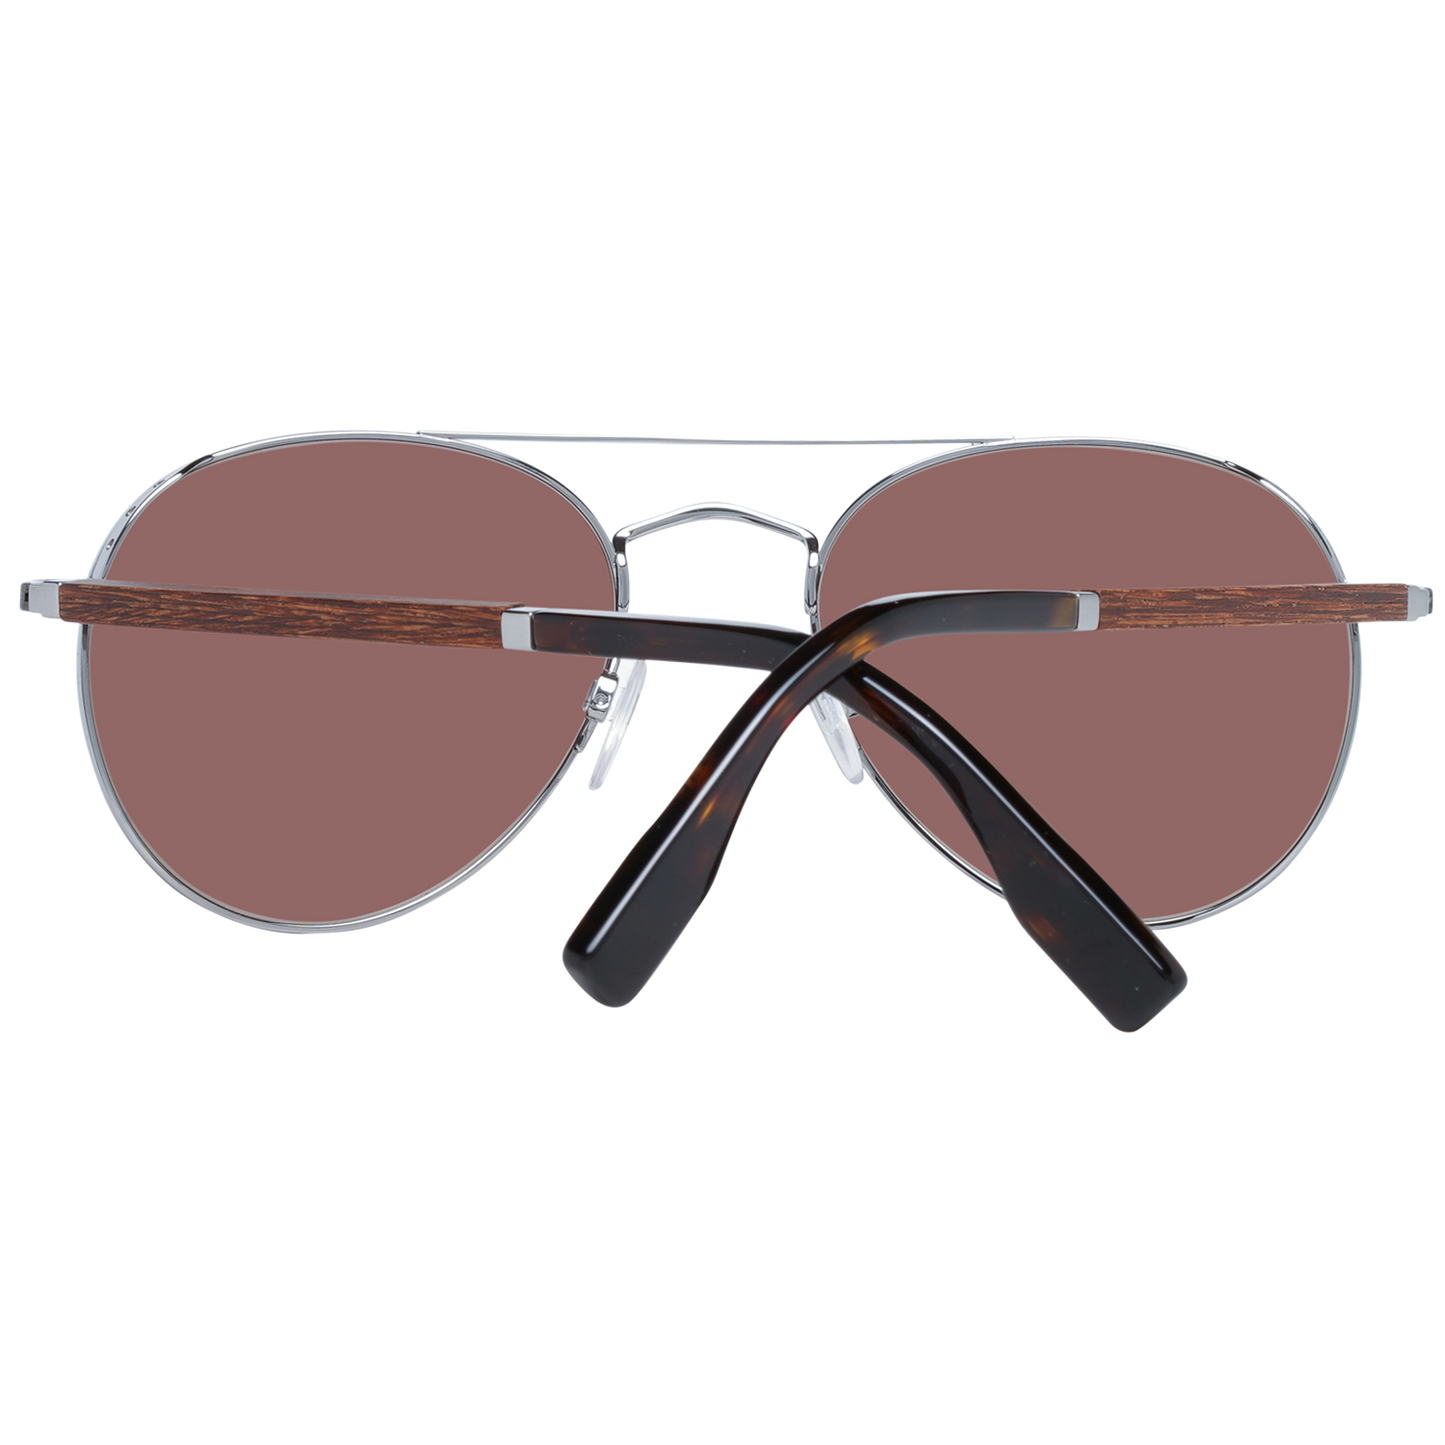 Zegna Couture Gray Men Sunglasses - DEA STILOSA MILANO